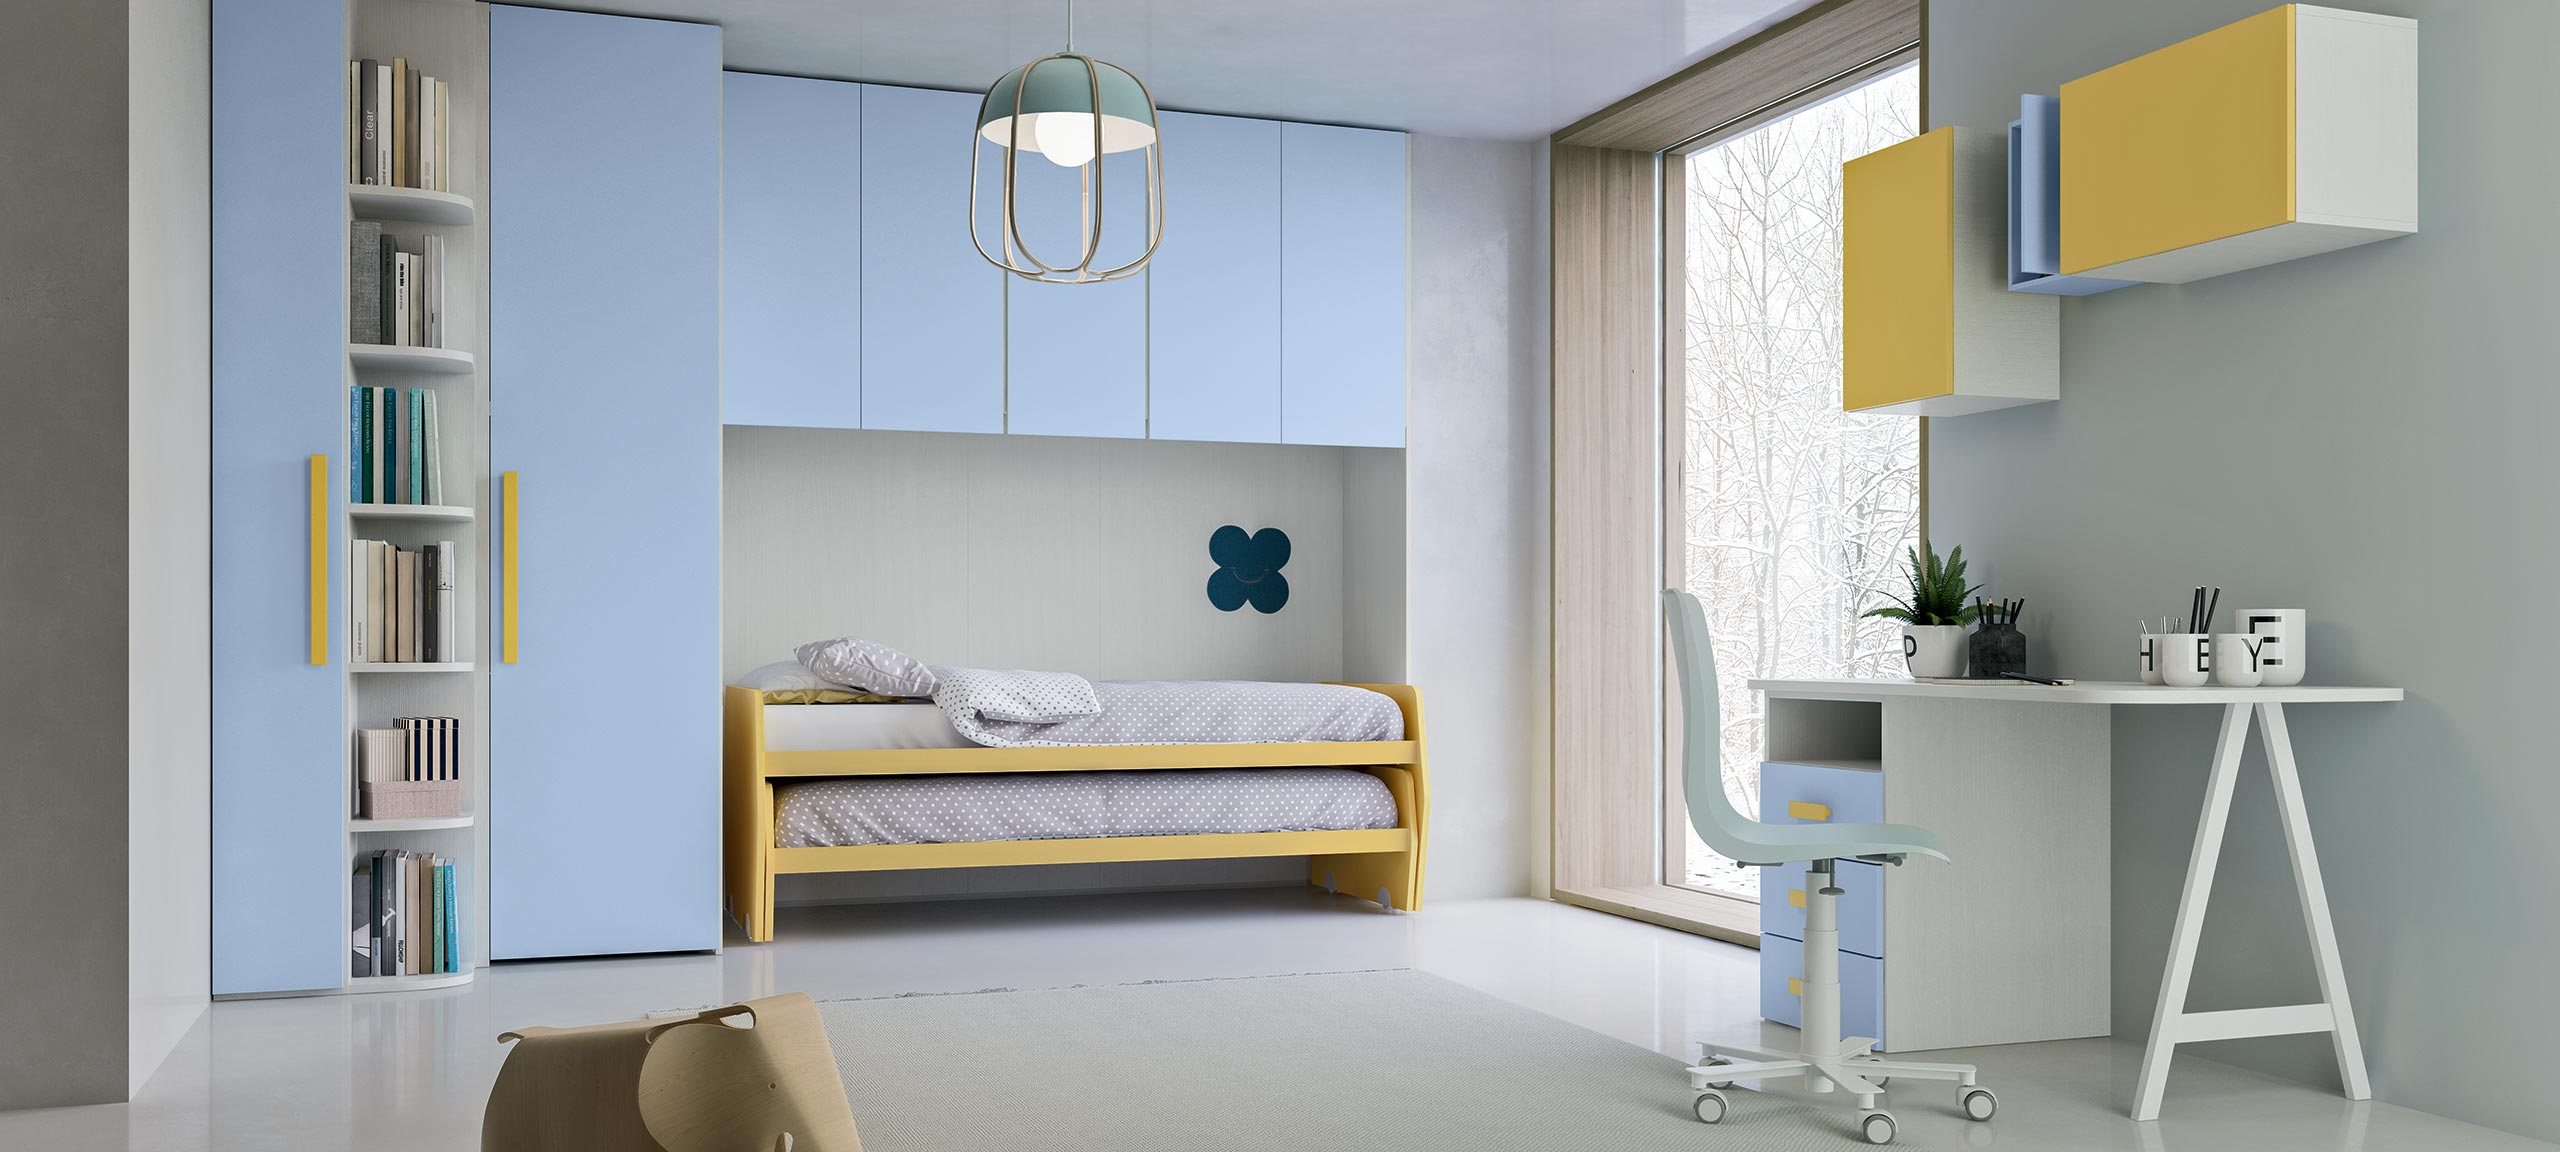 children's bedrooms with over-bed storage 5